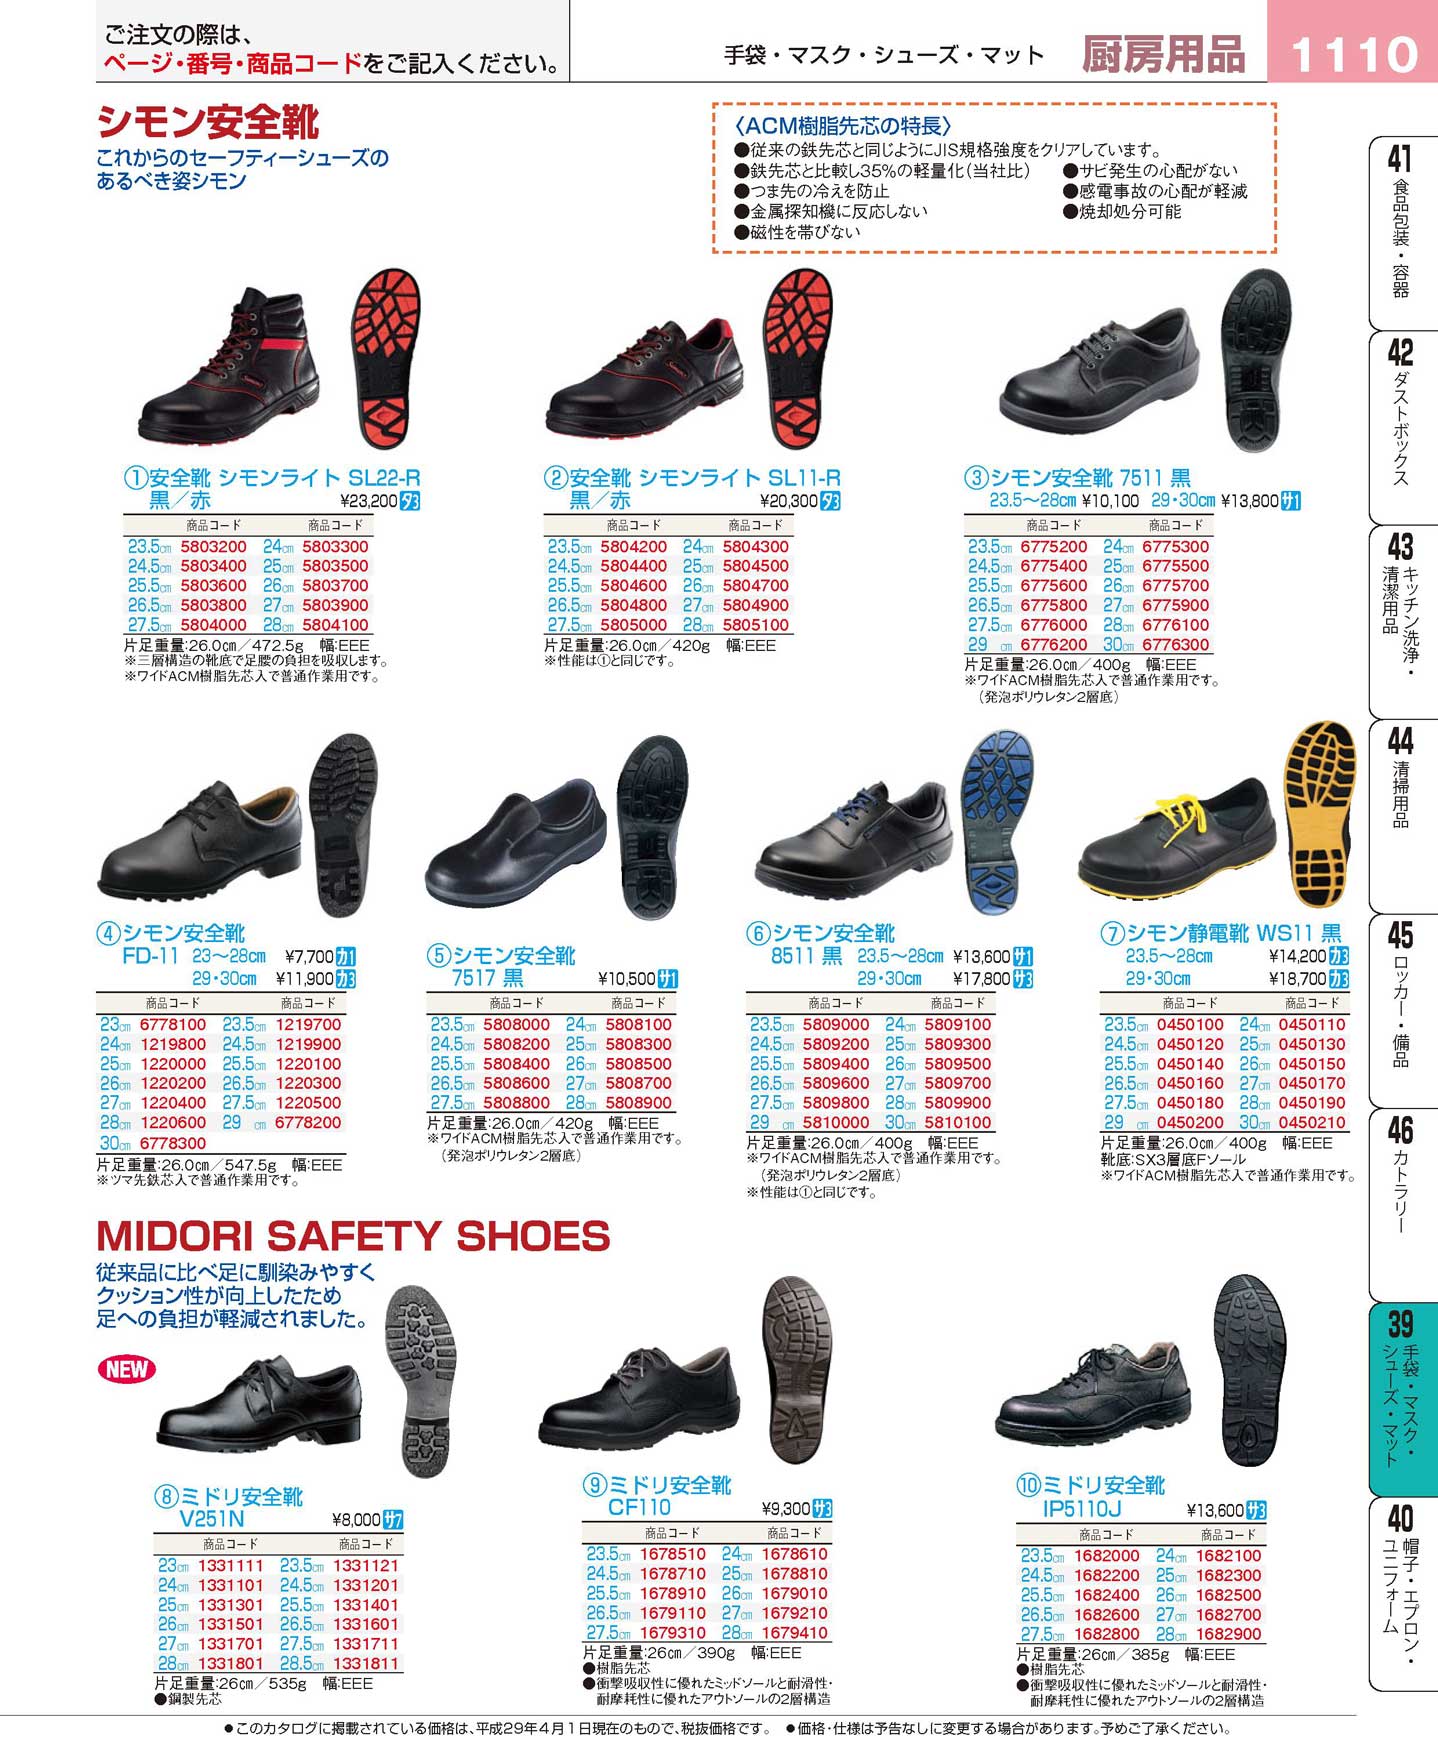 食器 シモン安全靴・ミドリ安全靴 プロフェッショナルベストコレクション１７ ＥＢＭ－1110ページ